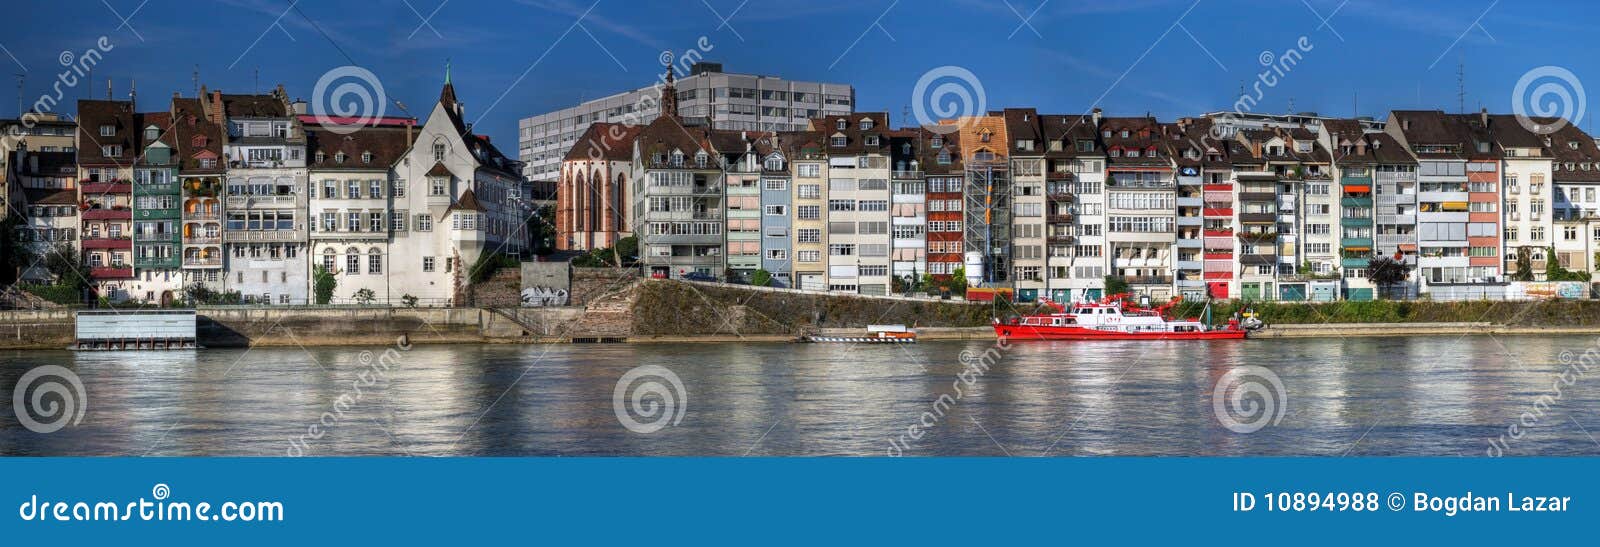 Photos libres de droits: Panoramique des maisons de bord de mer, BÃ¢le ...